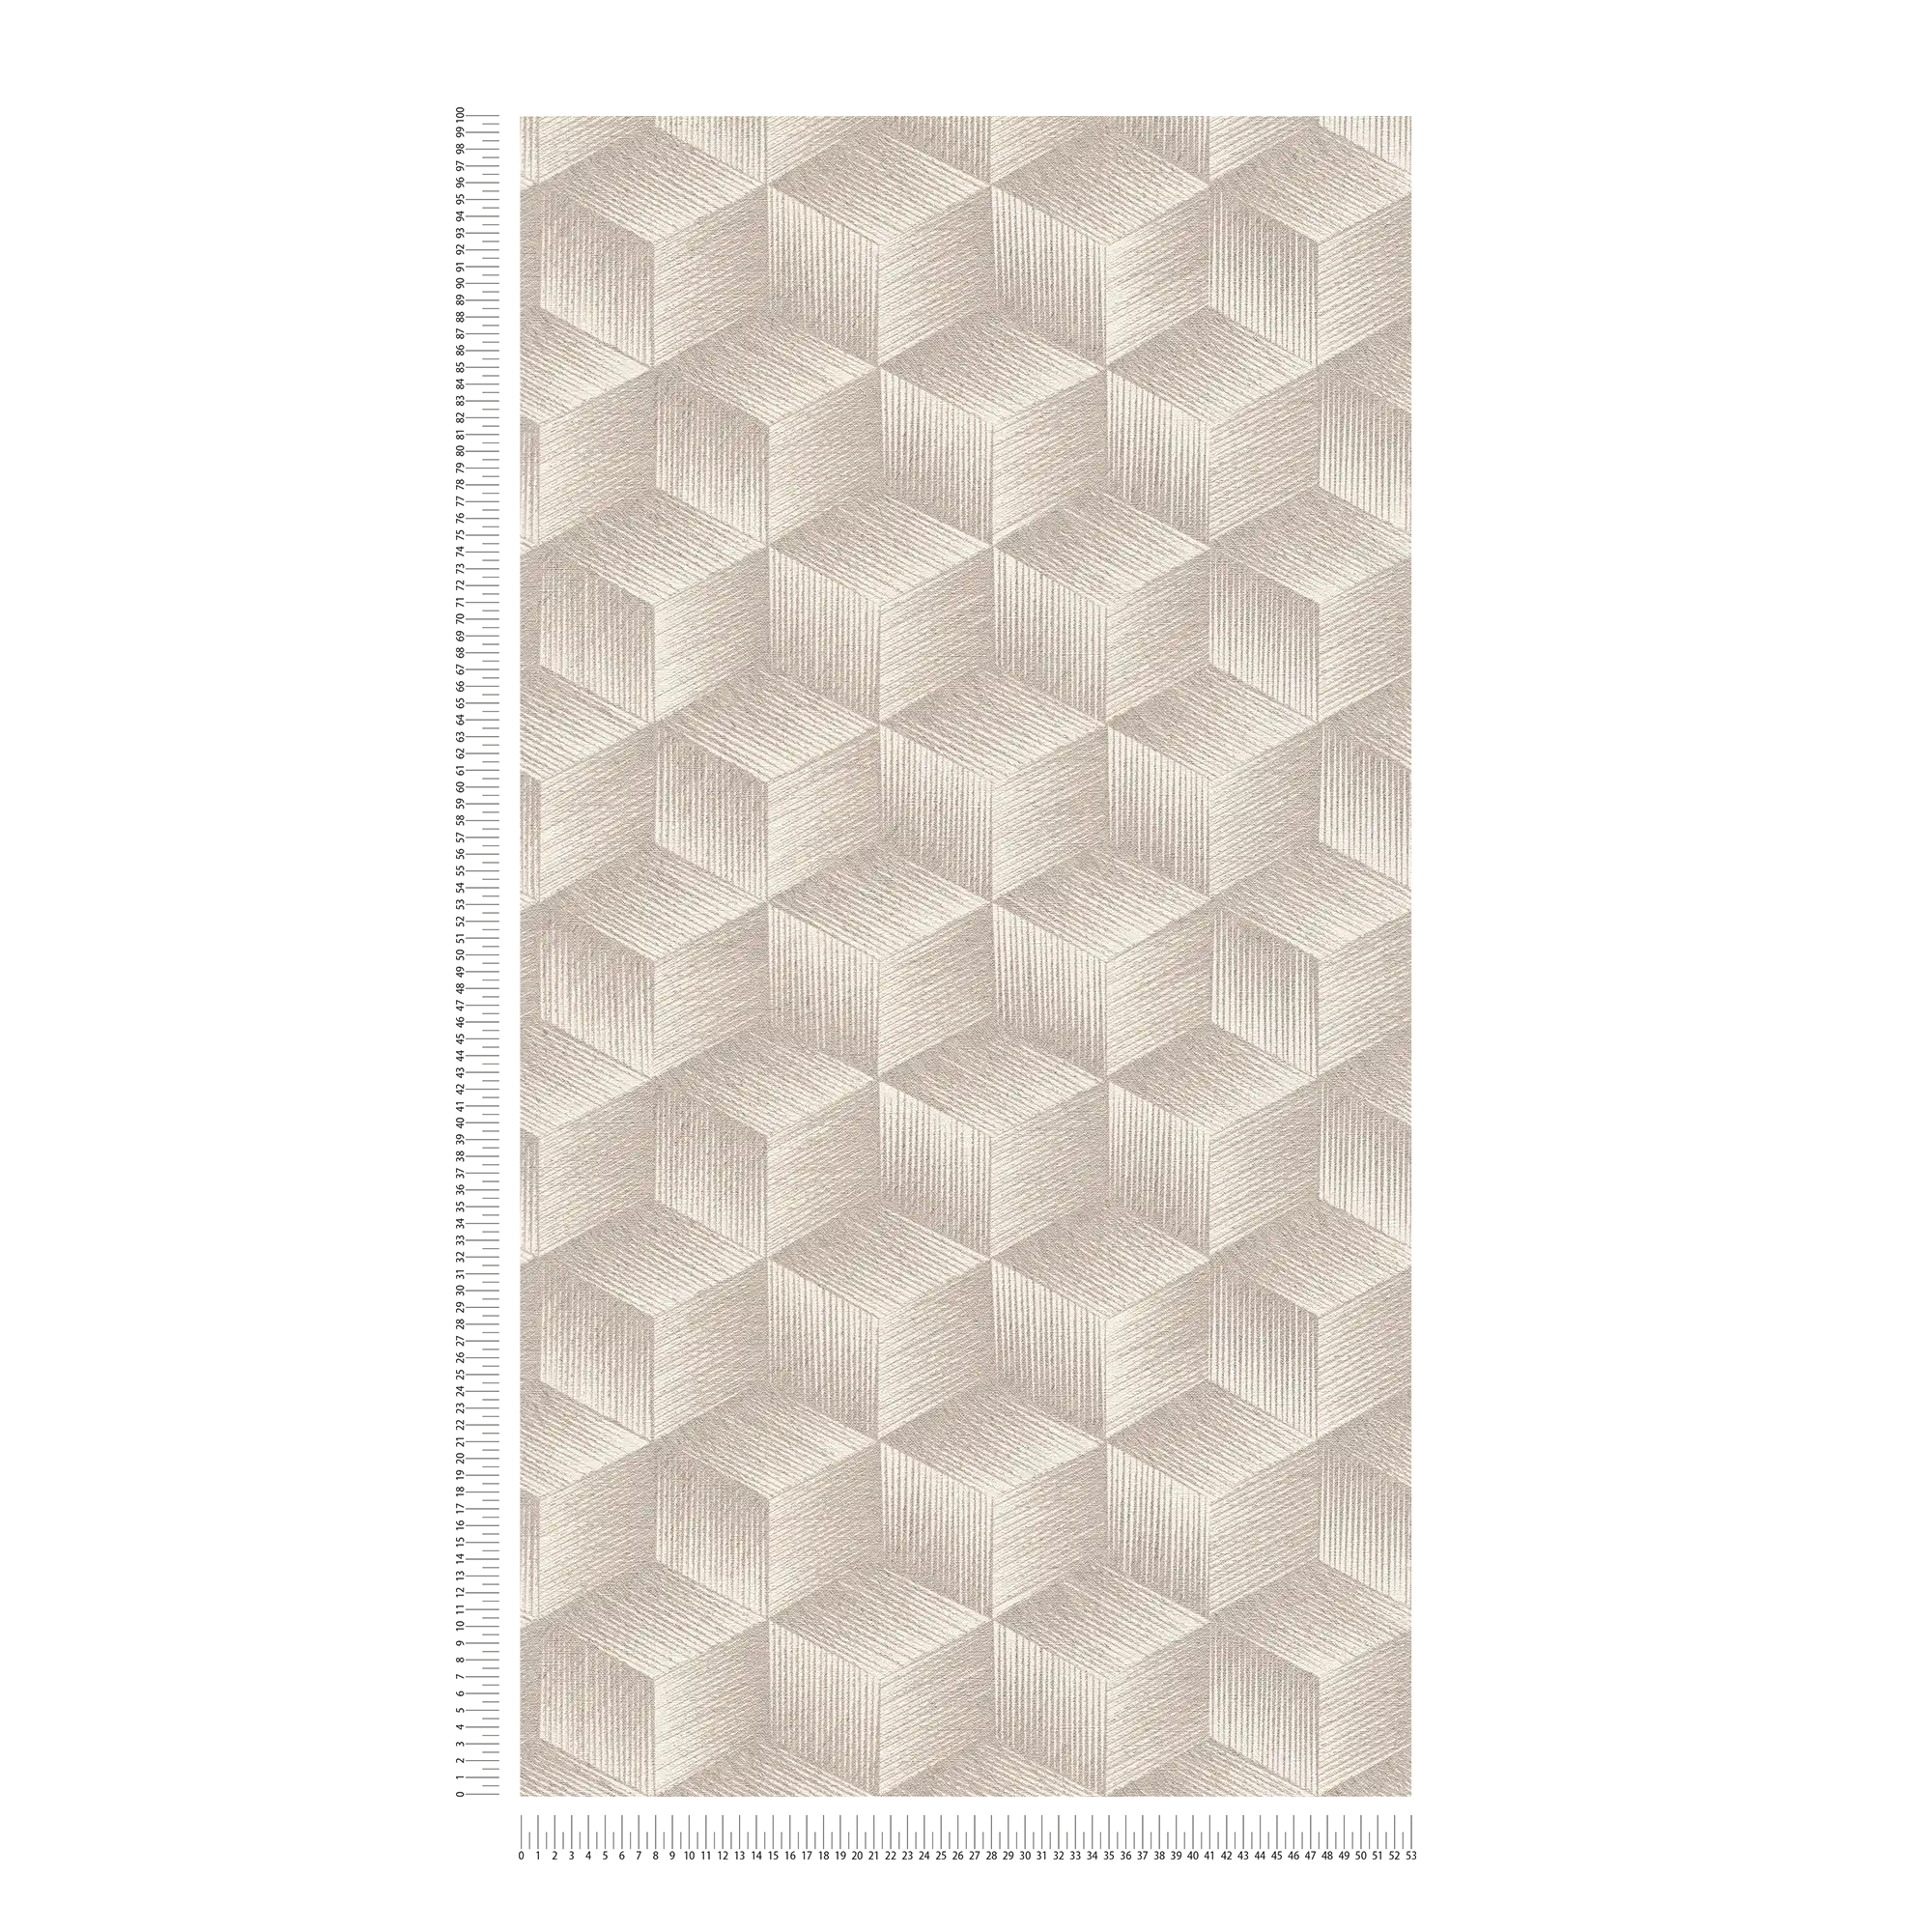             Papel pintado tejido-no tejido con efecto 3D y diseño cuadrado Sin PVC - gris, grisáceo, blanco
        